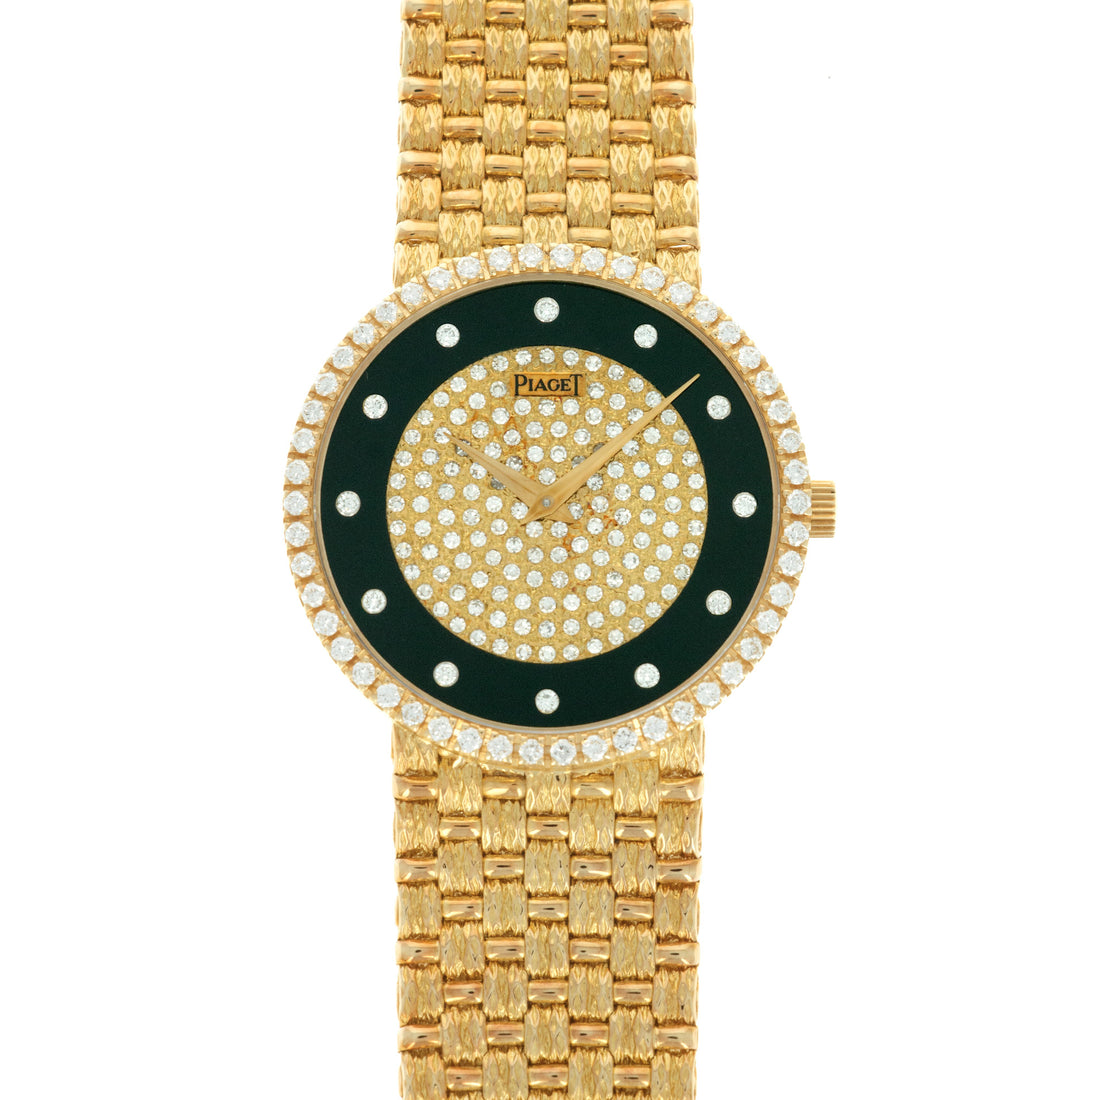 Piaget Yellow Gold Diamond & Onyx Watch, 1970s